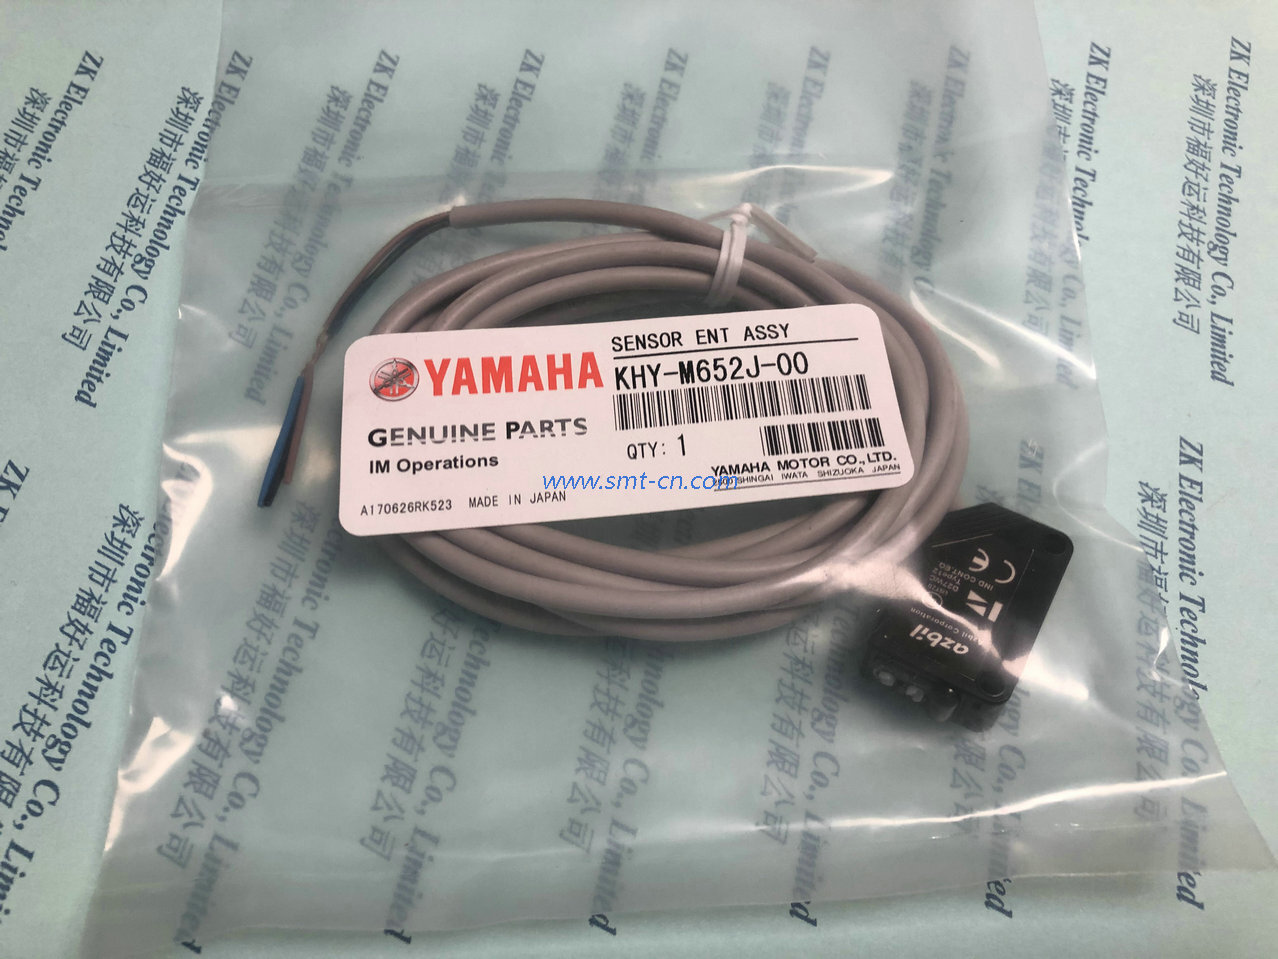 Yamaha KHY-M652J-00 Sensor, Ent Assy (1)